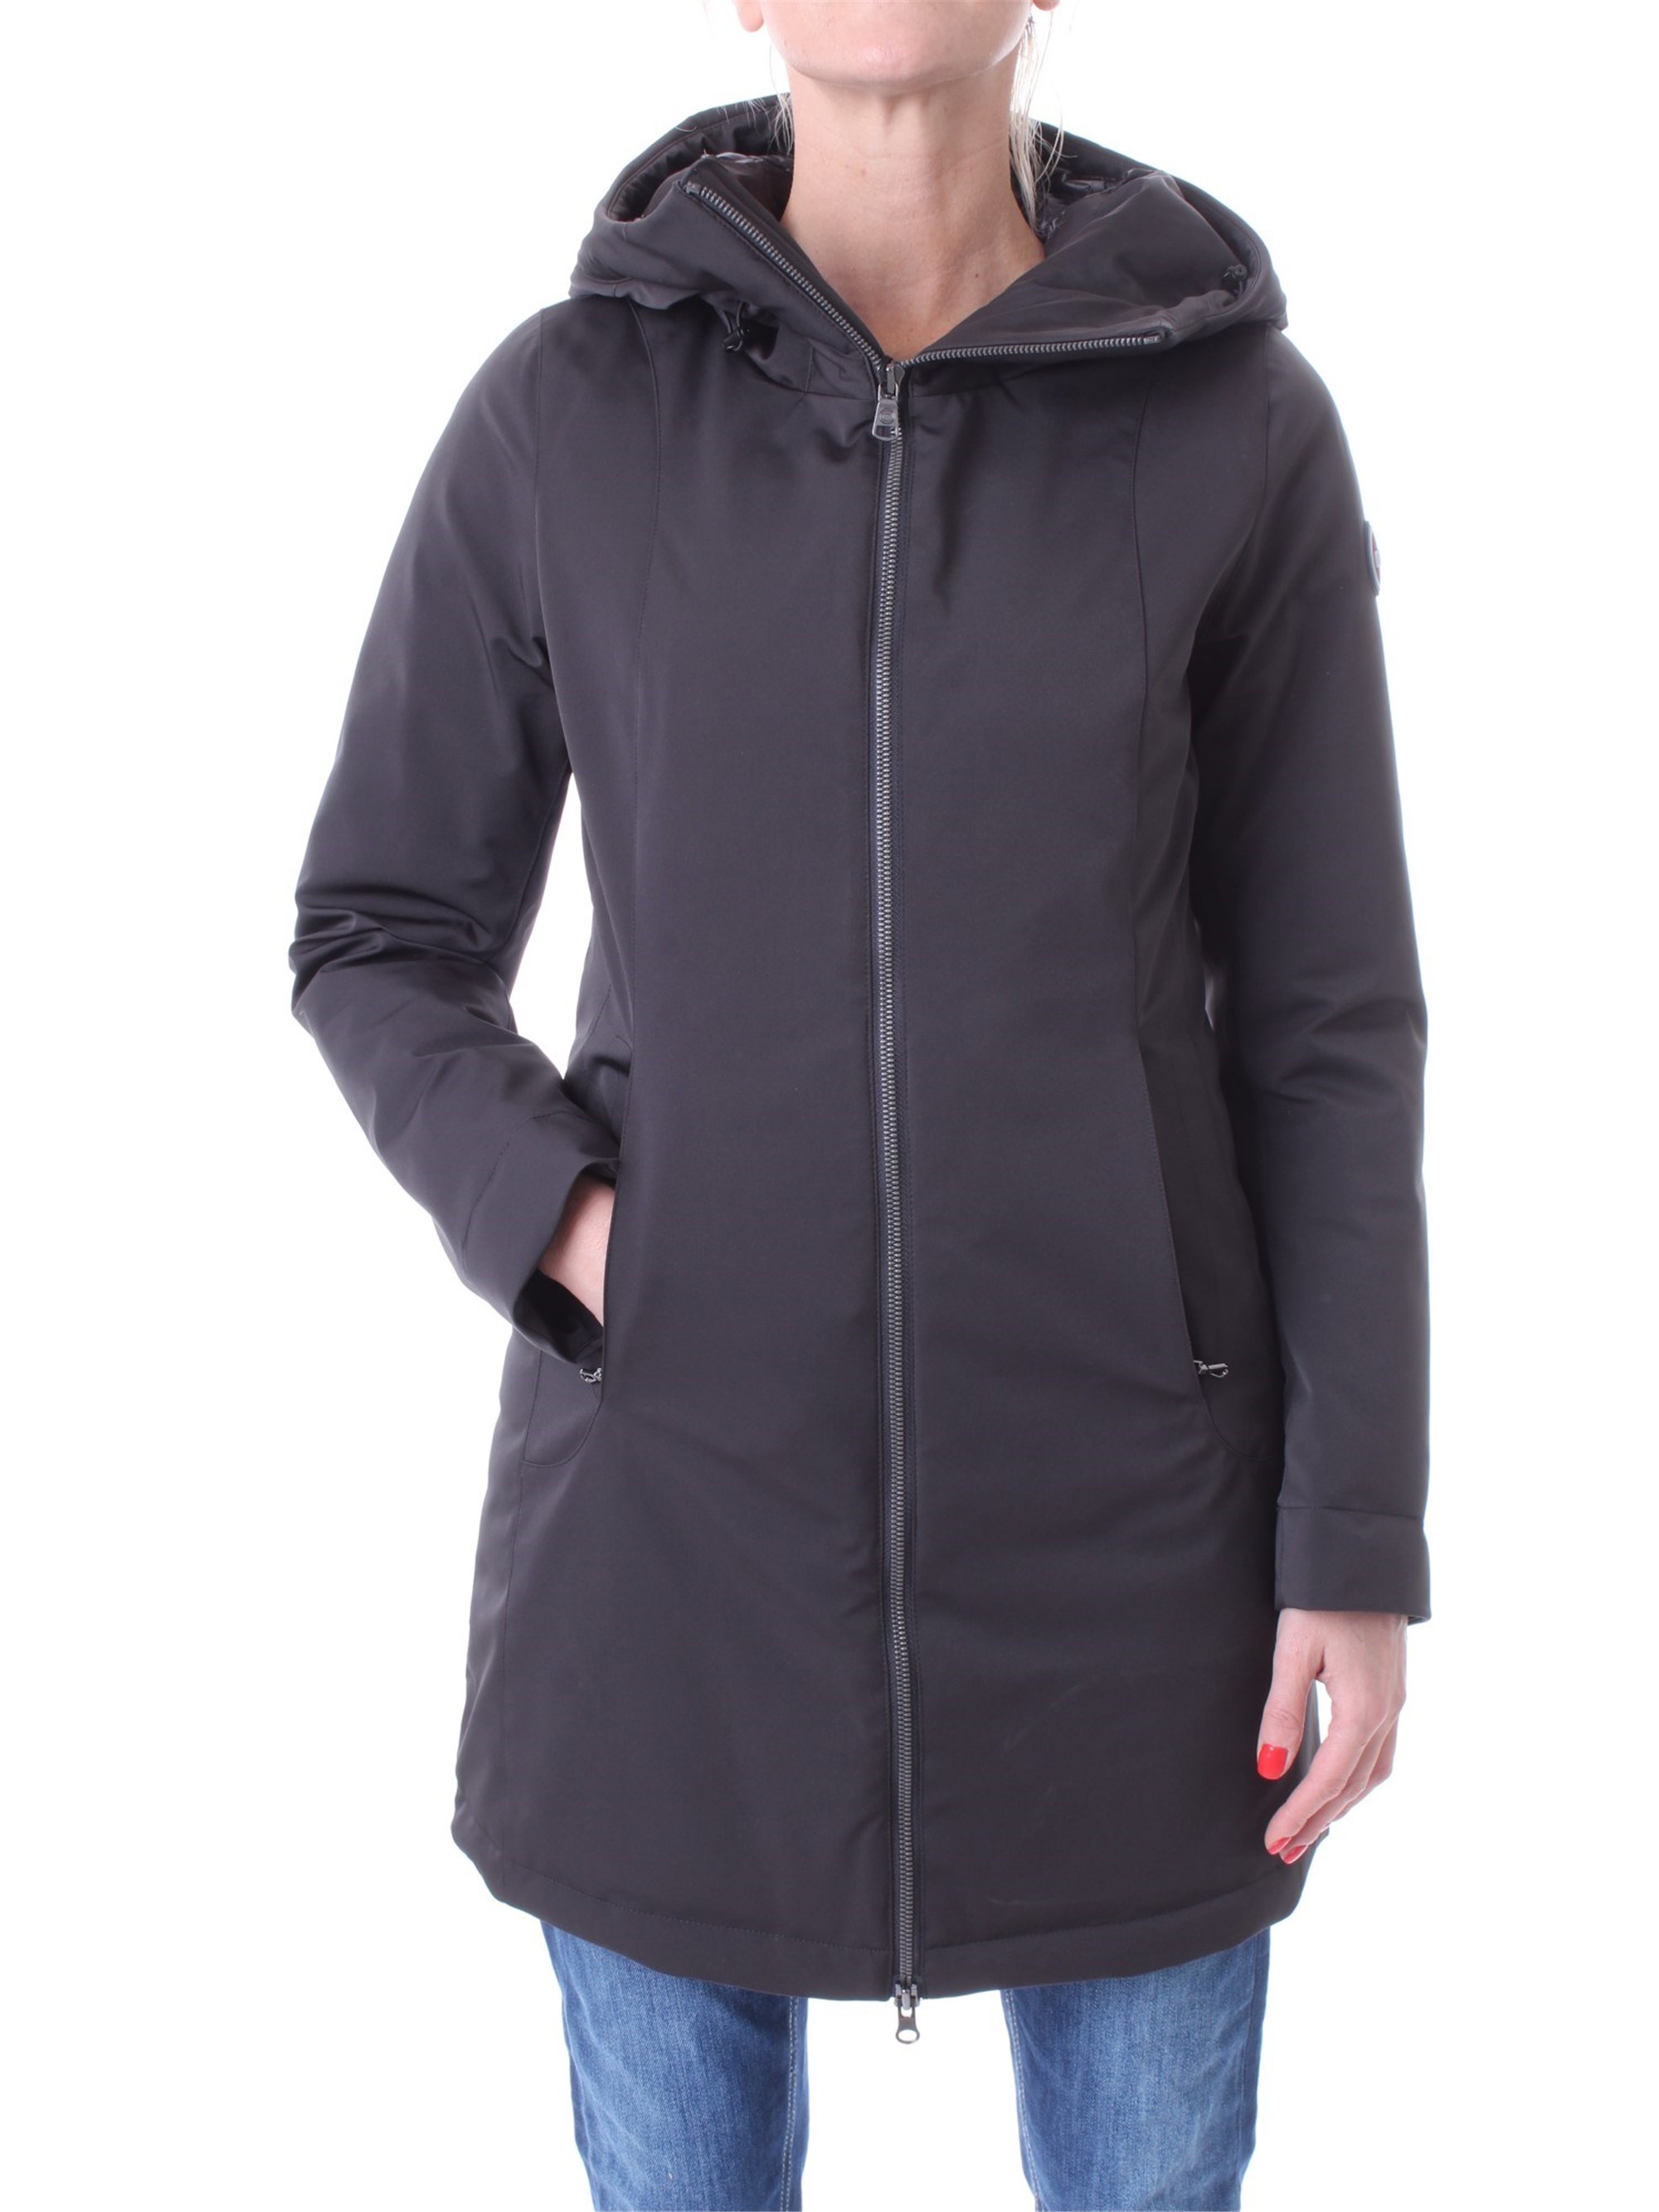 COLMAR Jacke Damen schwarz nylon stretch günstig online kaufen